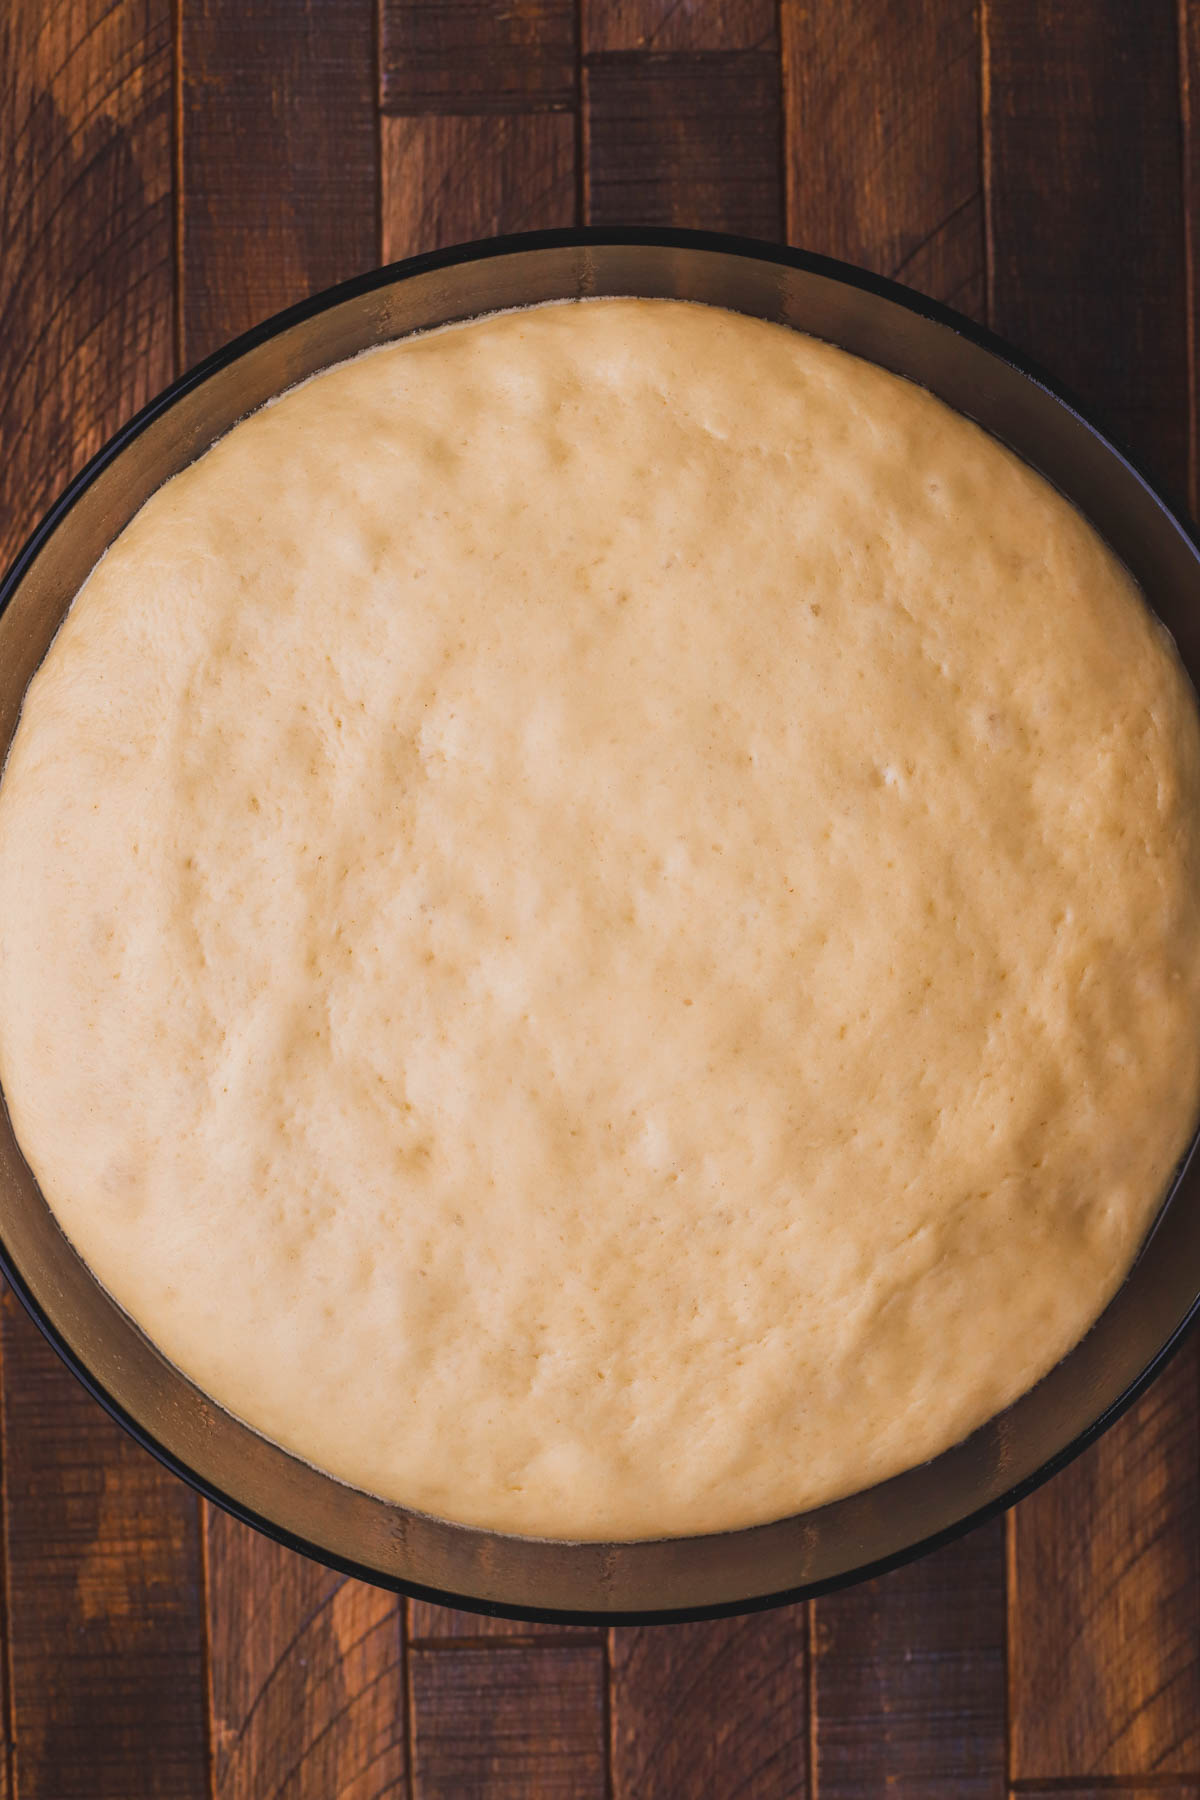 Risen brioche dough